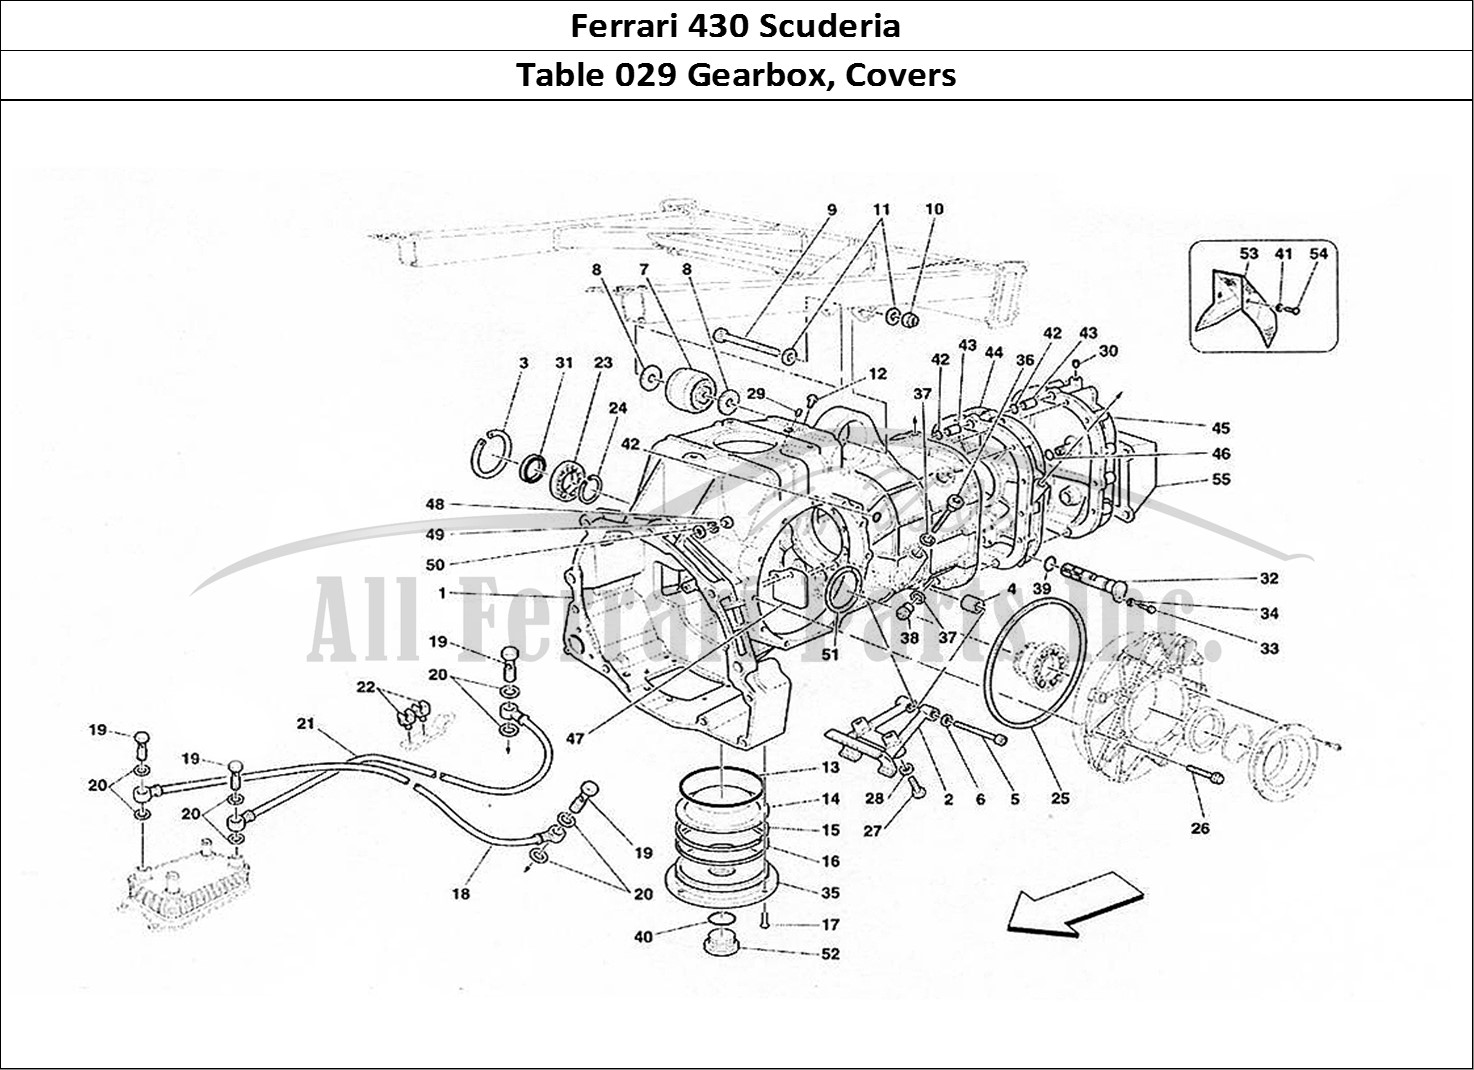 Ferrari Parts Ferrari 430 Scuderia Page 029 Gearbox - Covers